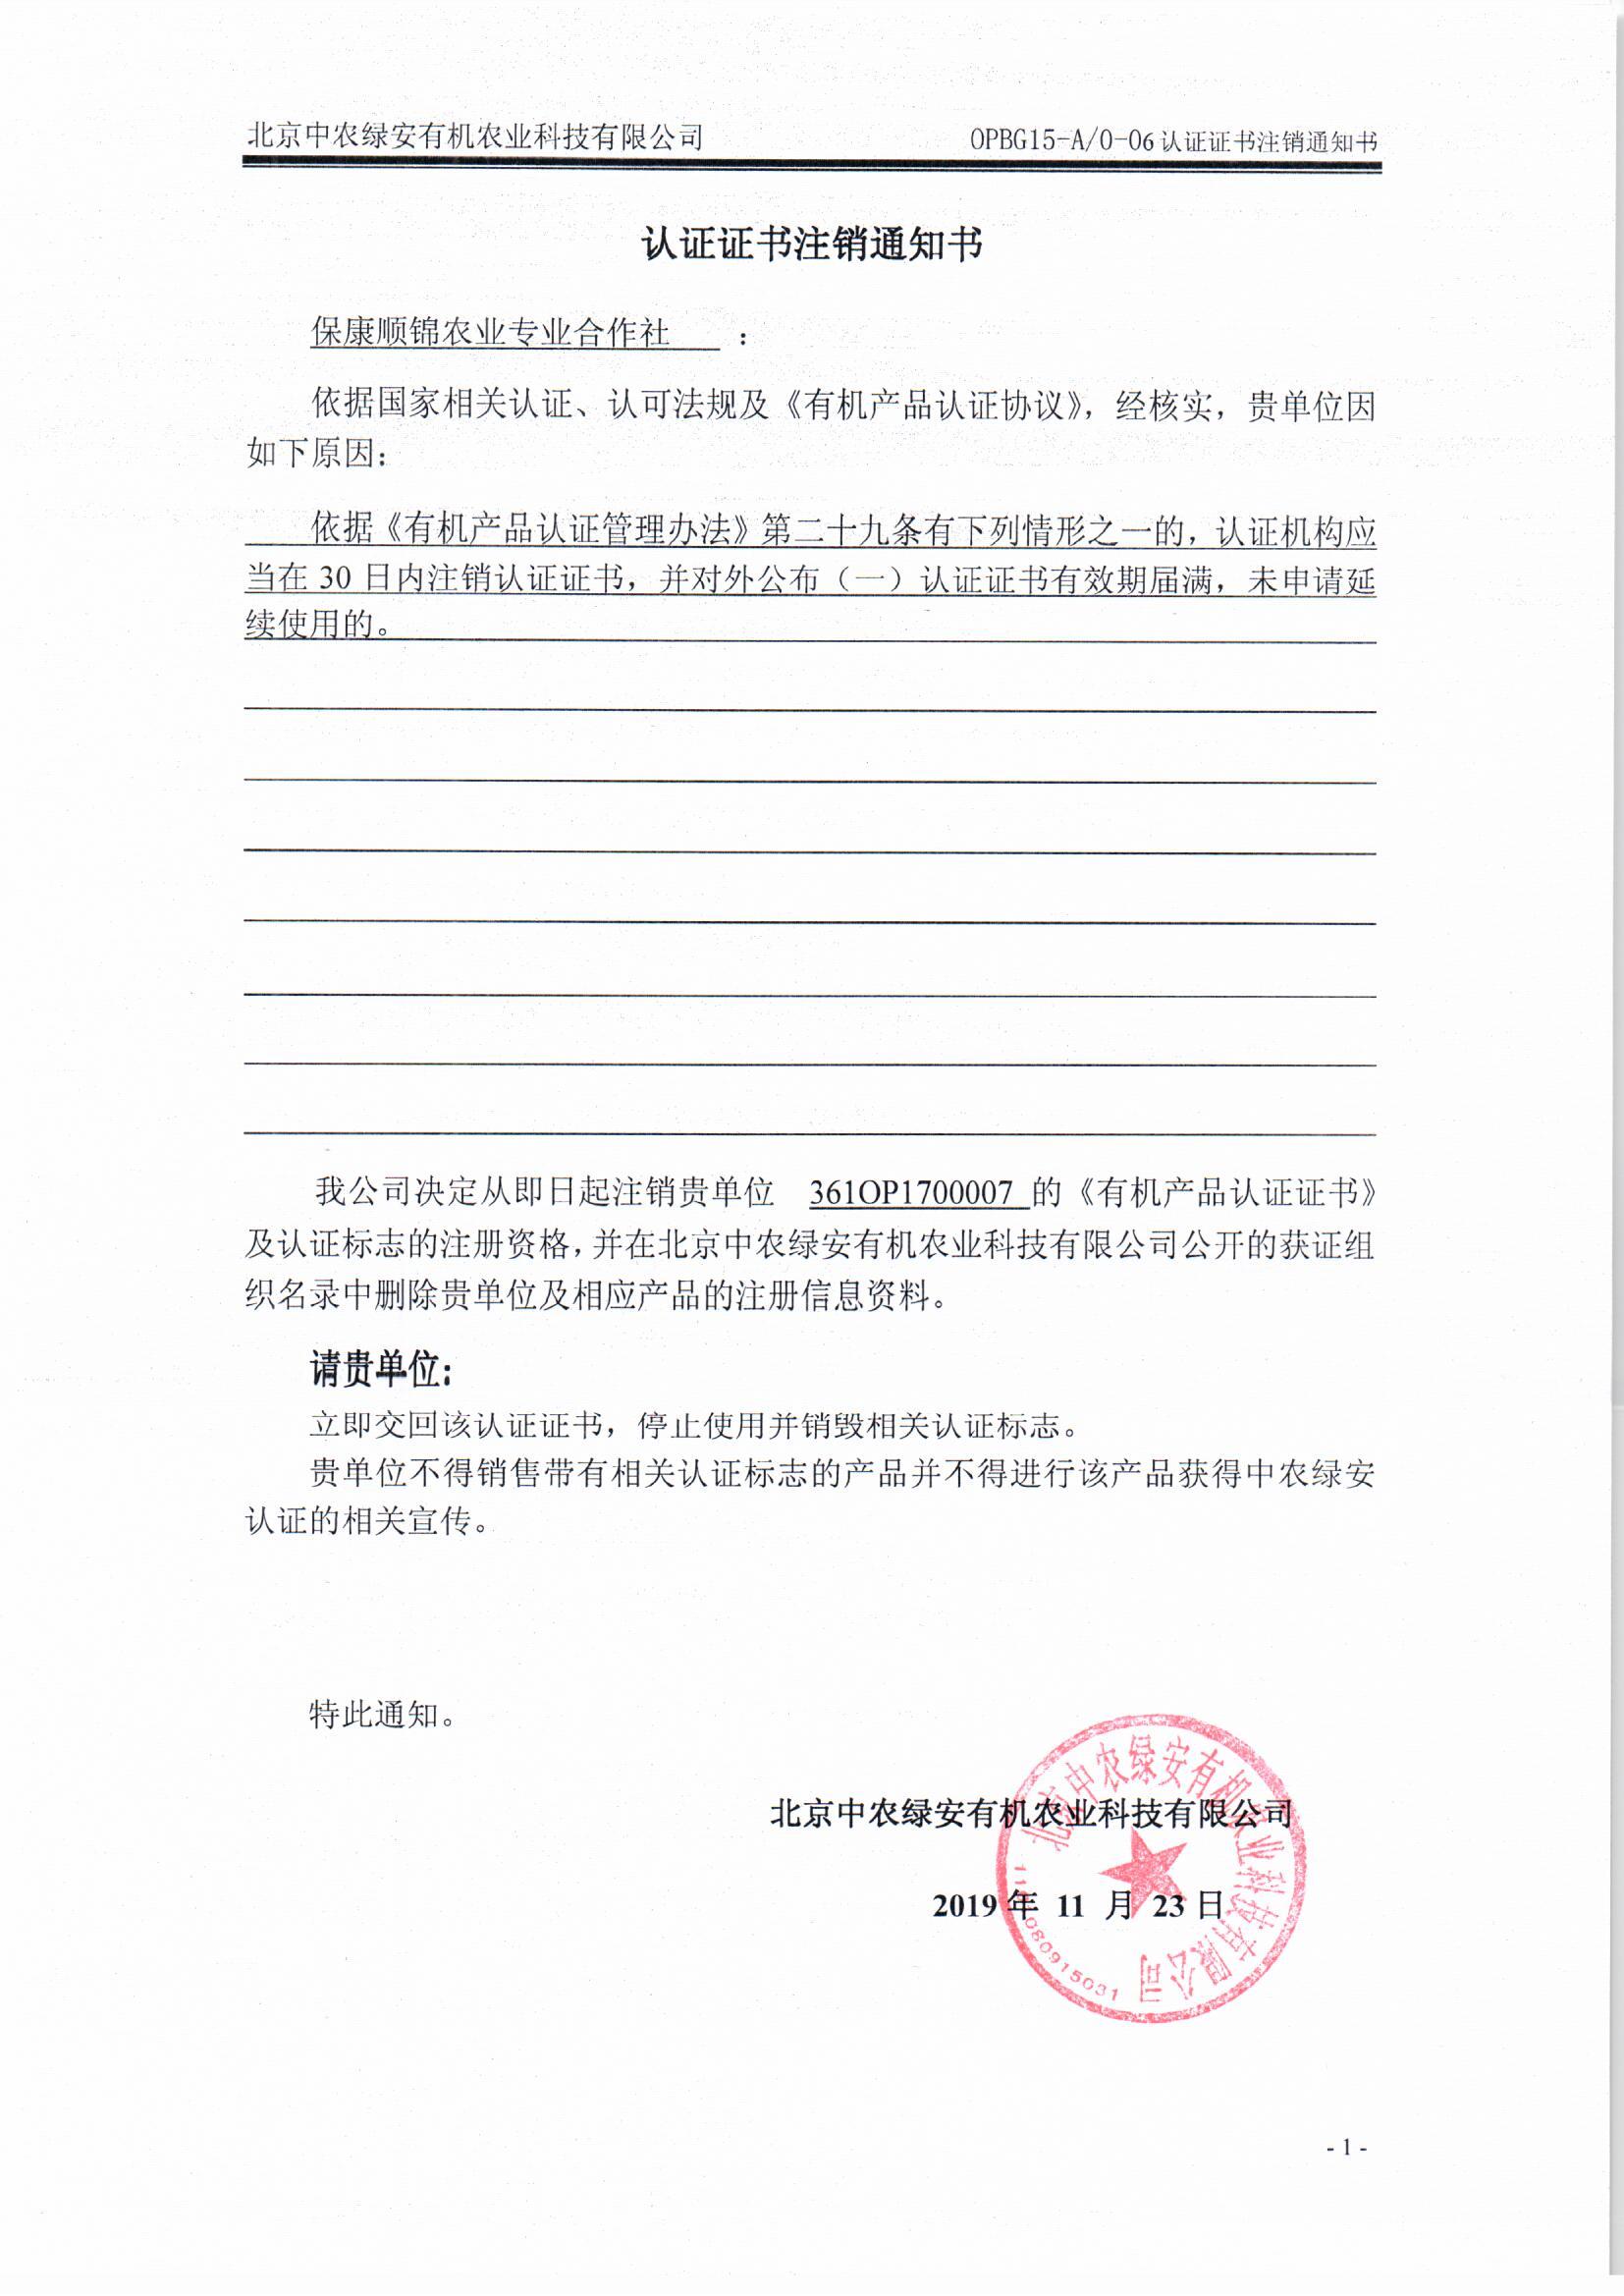 保康顺锦农业专业合作社证书注销通知